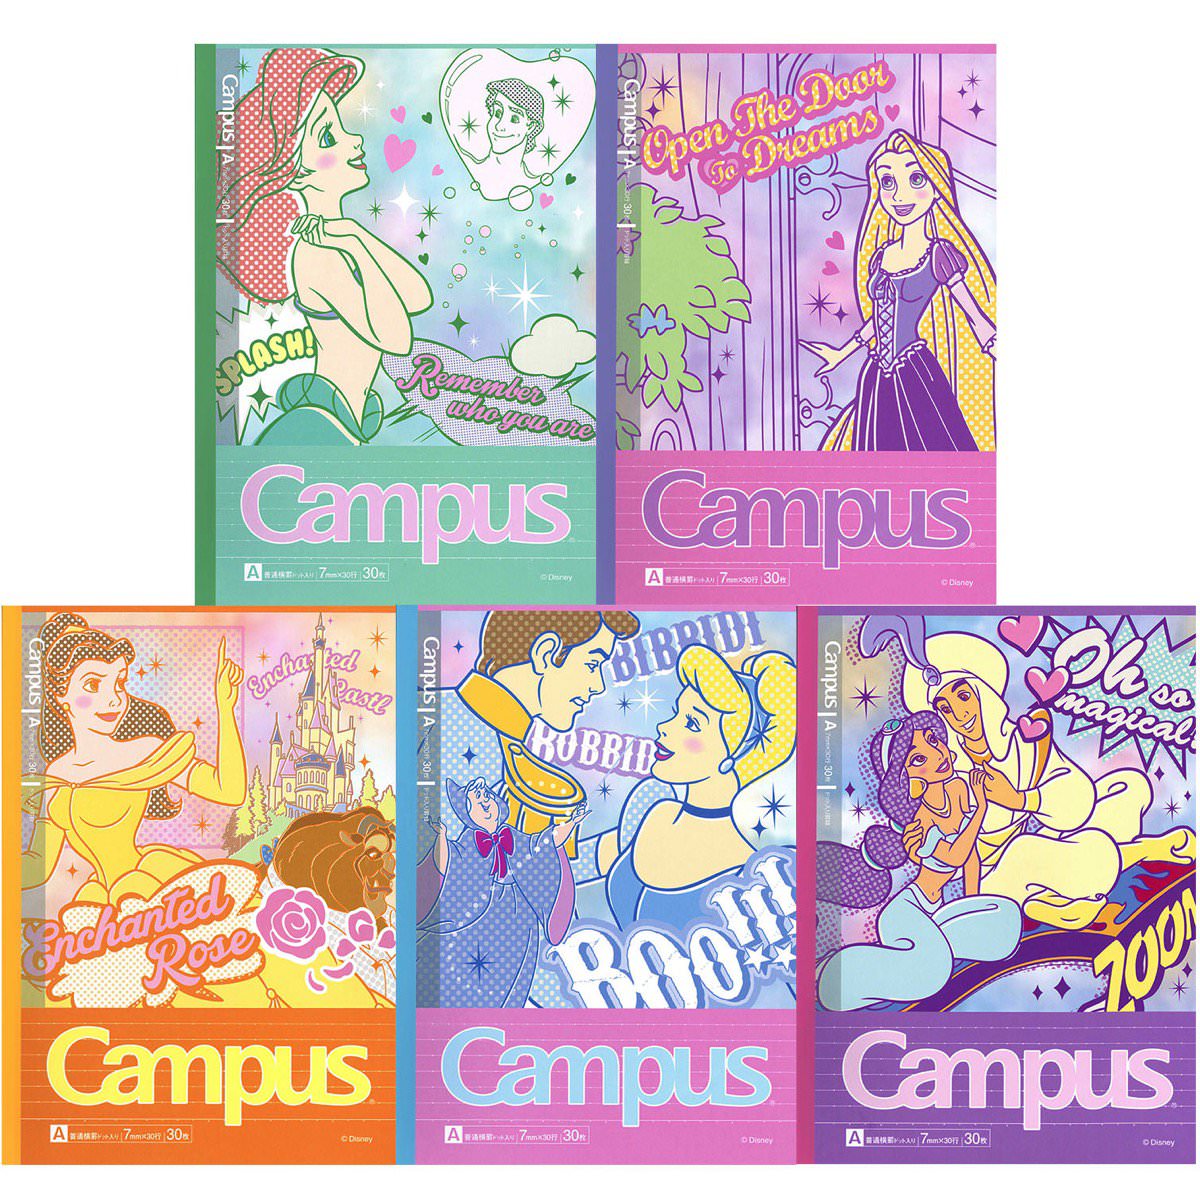 ディズニープリンセスのポップな絵柄がかわいい サンスター文具campus キャンパスノート